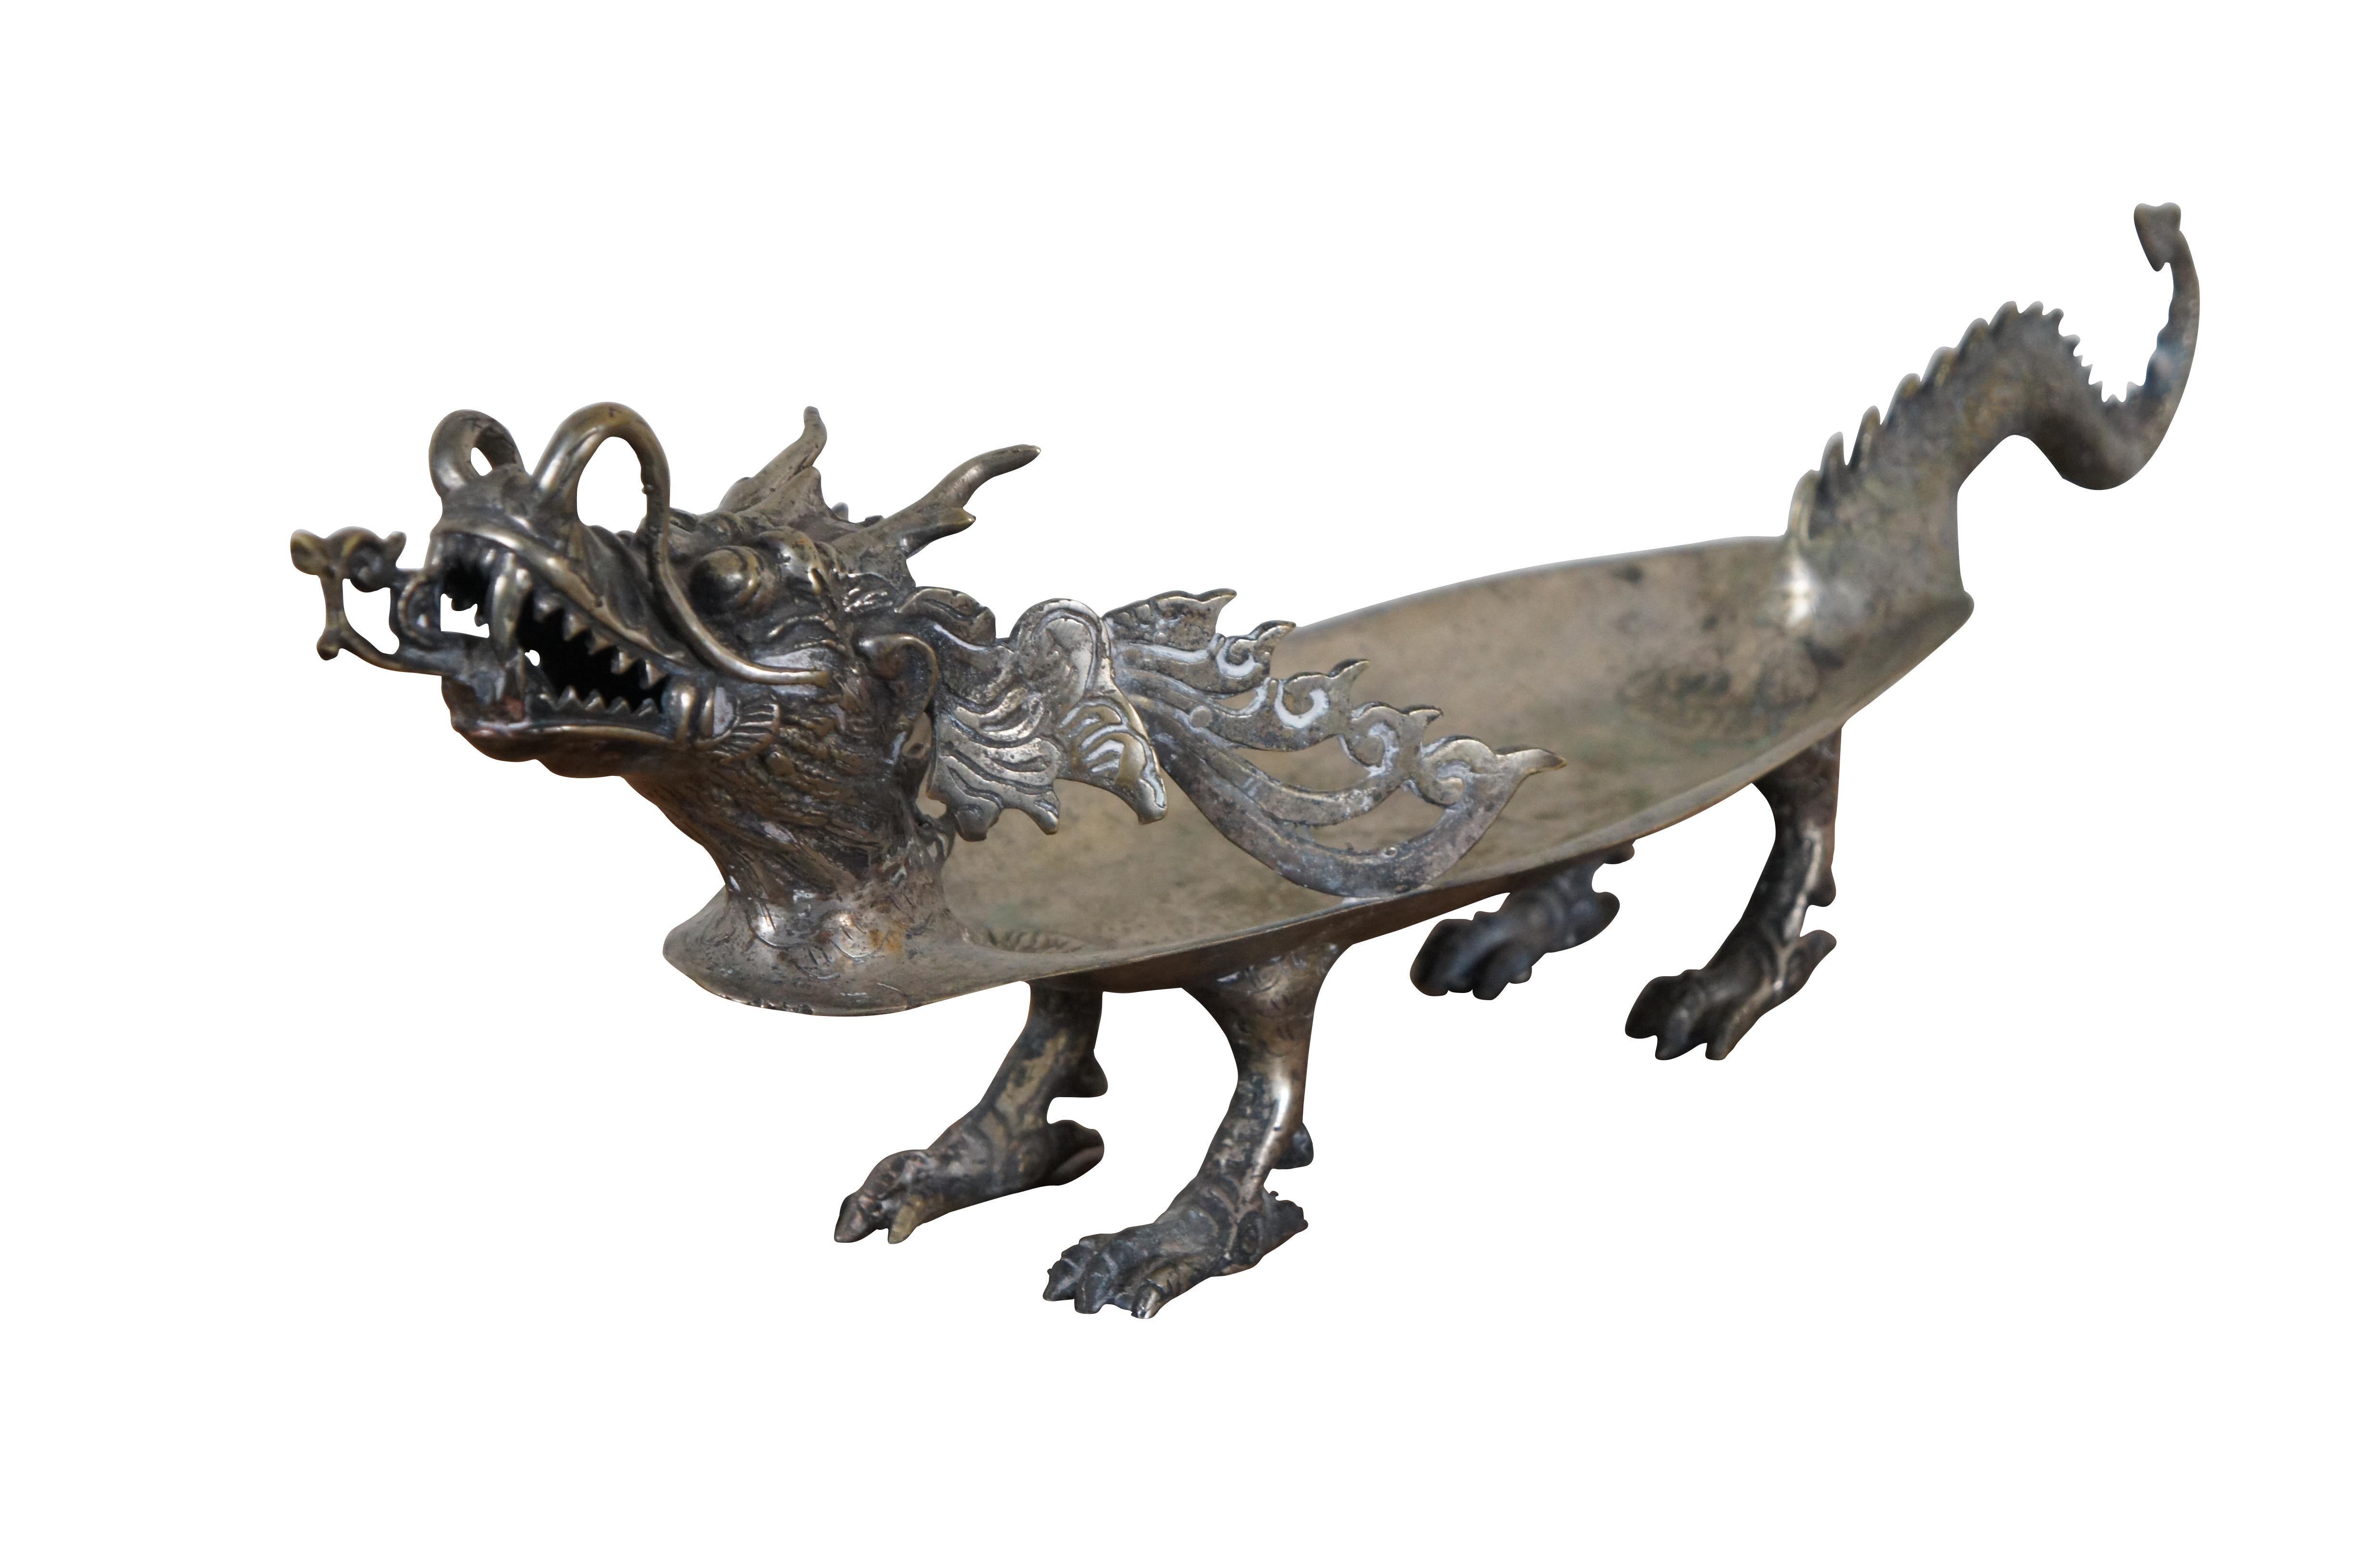 Plateau / compotier / plat à pied chinois vintage, de forme ovale, orné d'un dragon sculpté, d'accents réticulés et d'une base à quatre pieds.

Dimensions :
22